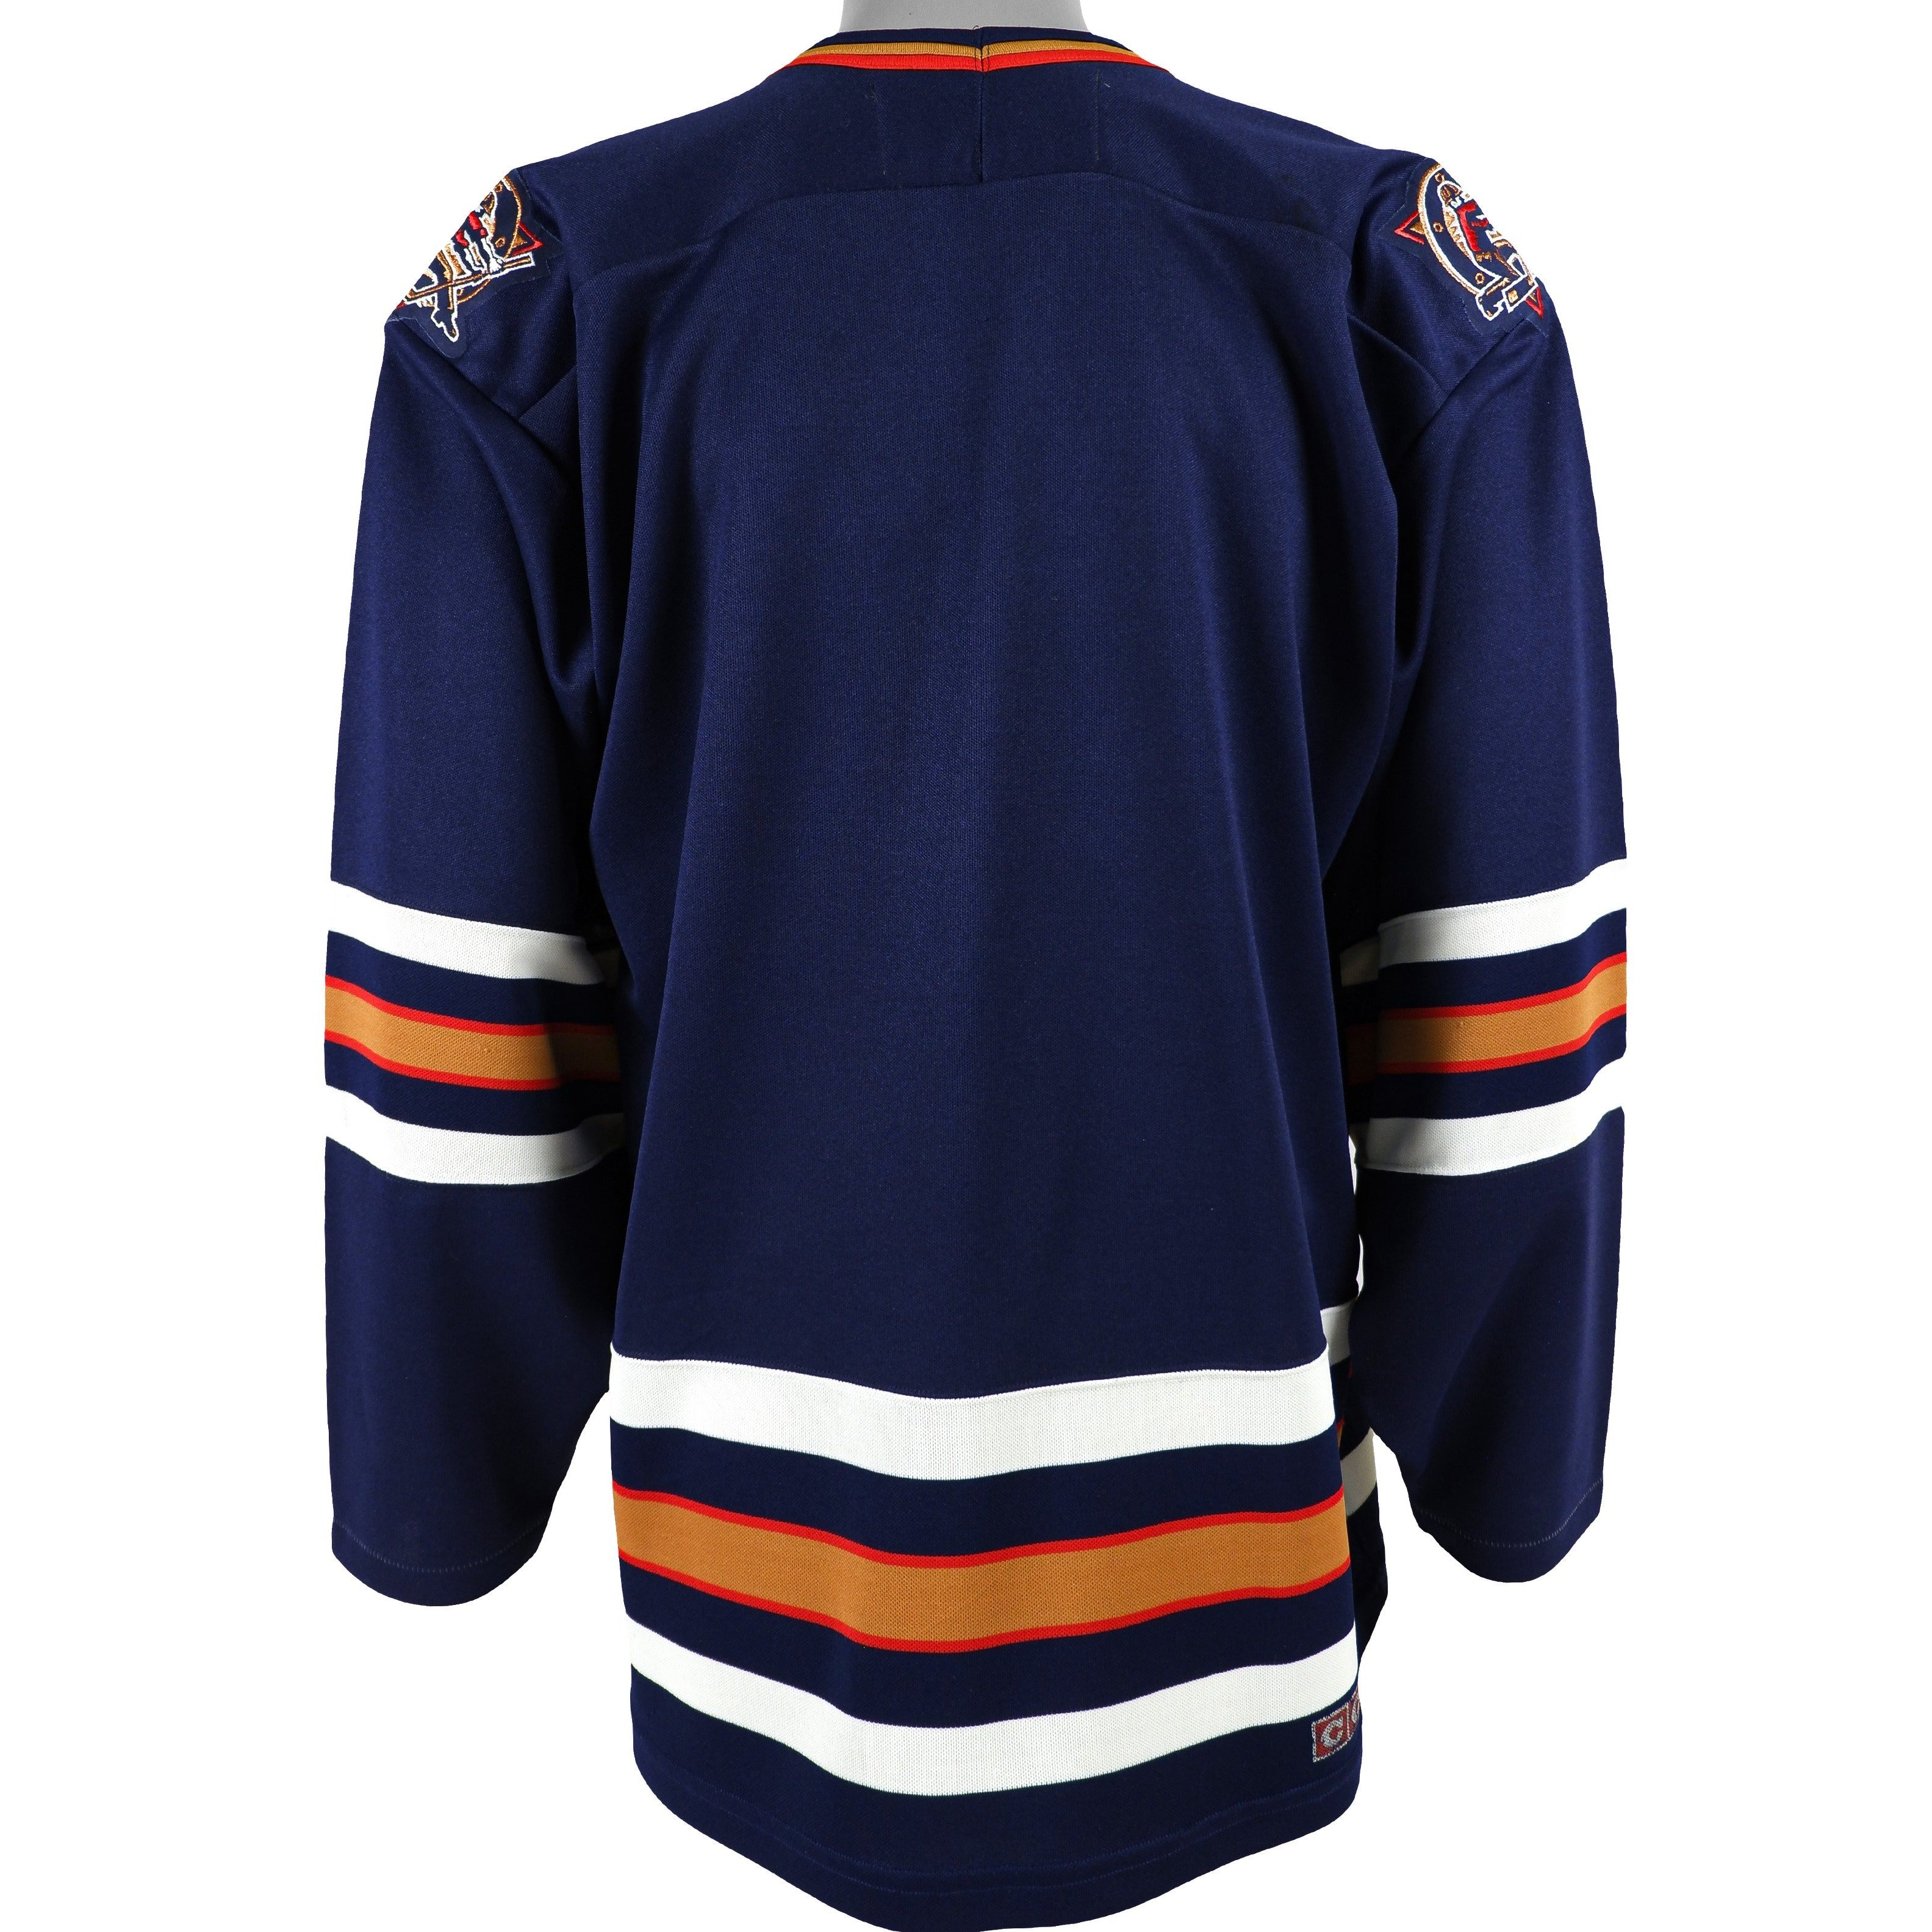 Ottawa Senators Jerseys & Teamwear, NHL Merchandise